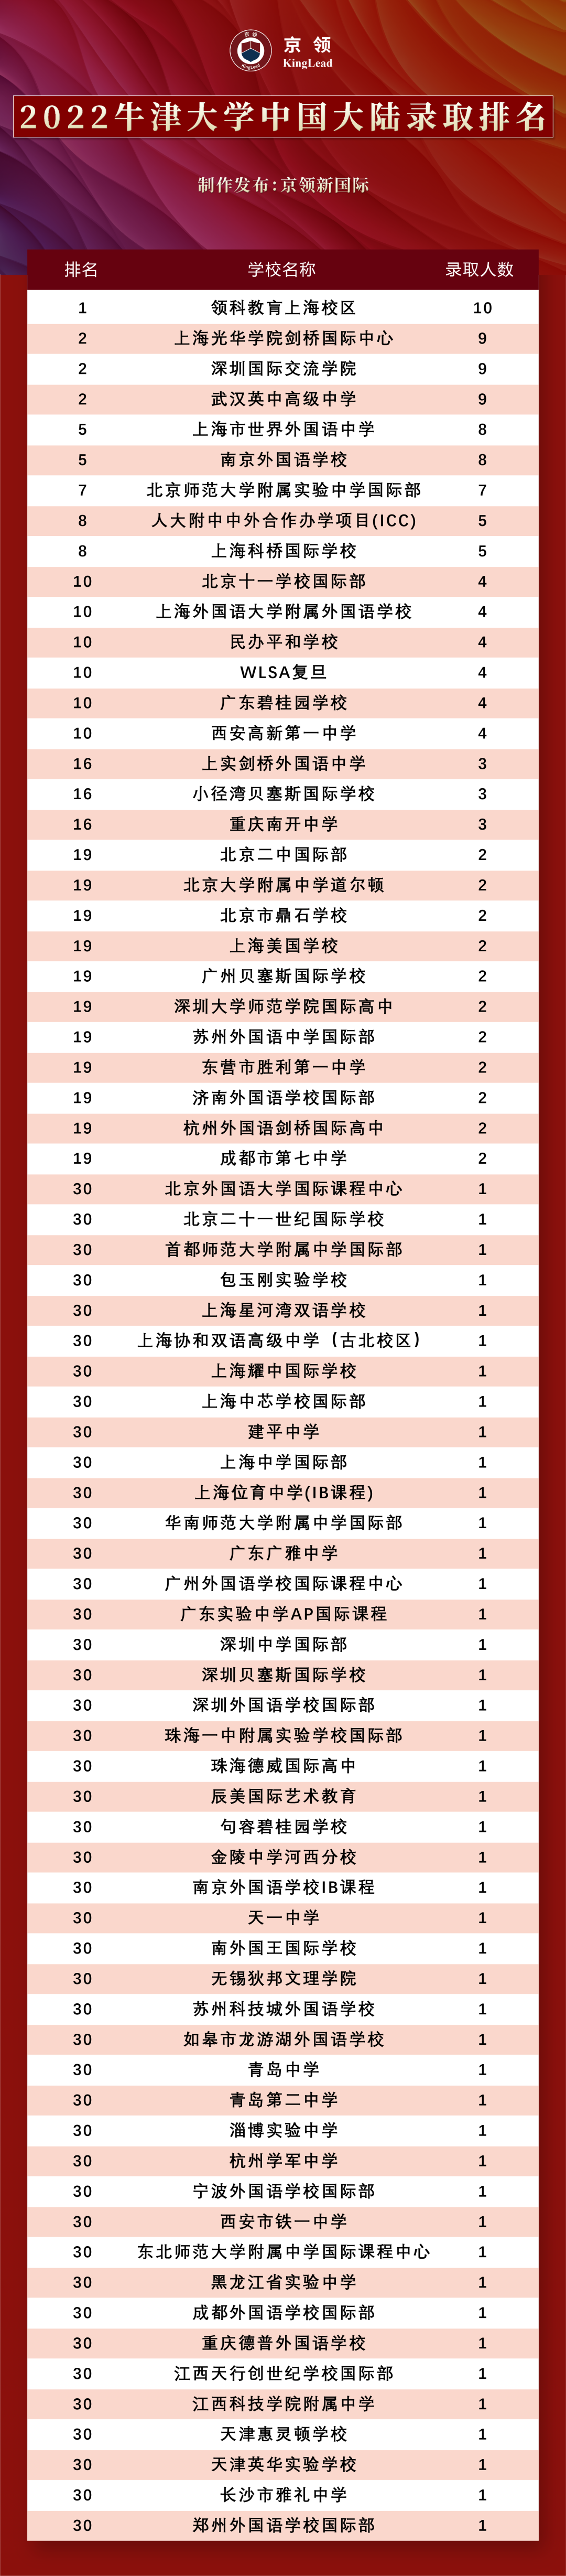 2022级中国学子170枚牛津offer，分别被这些专业所录取